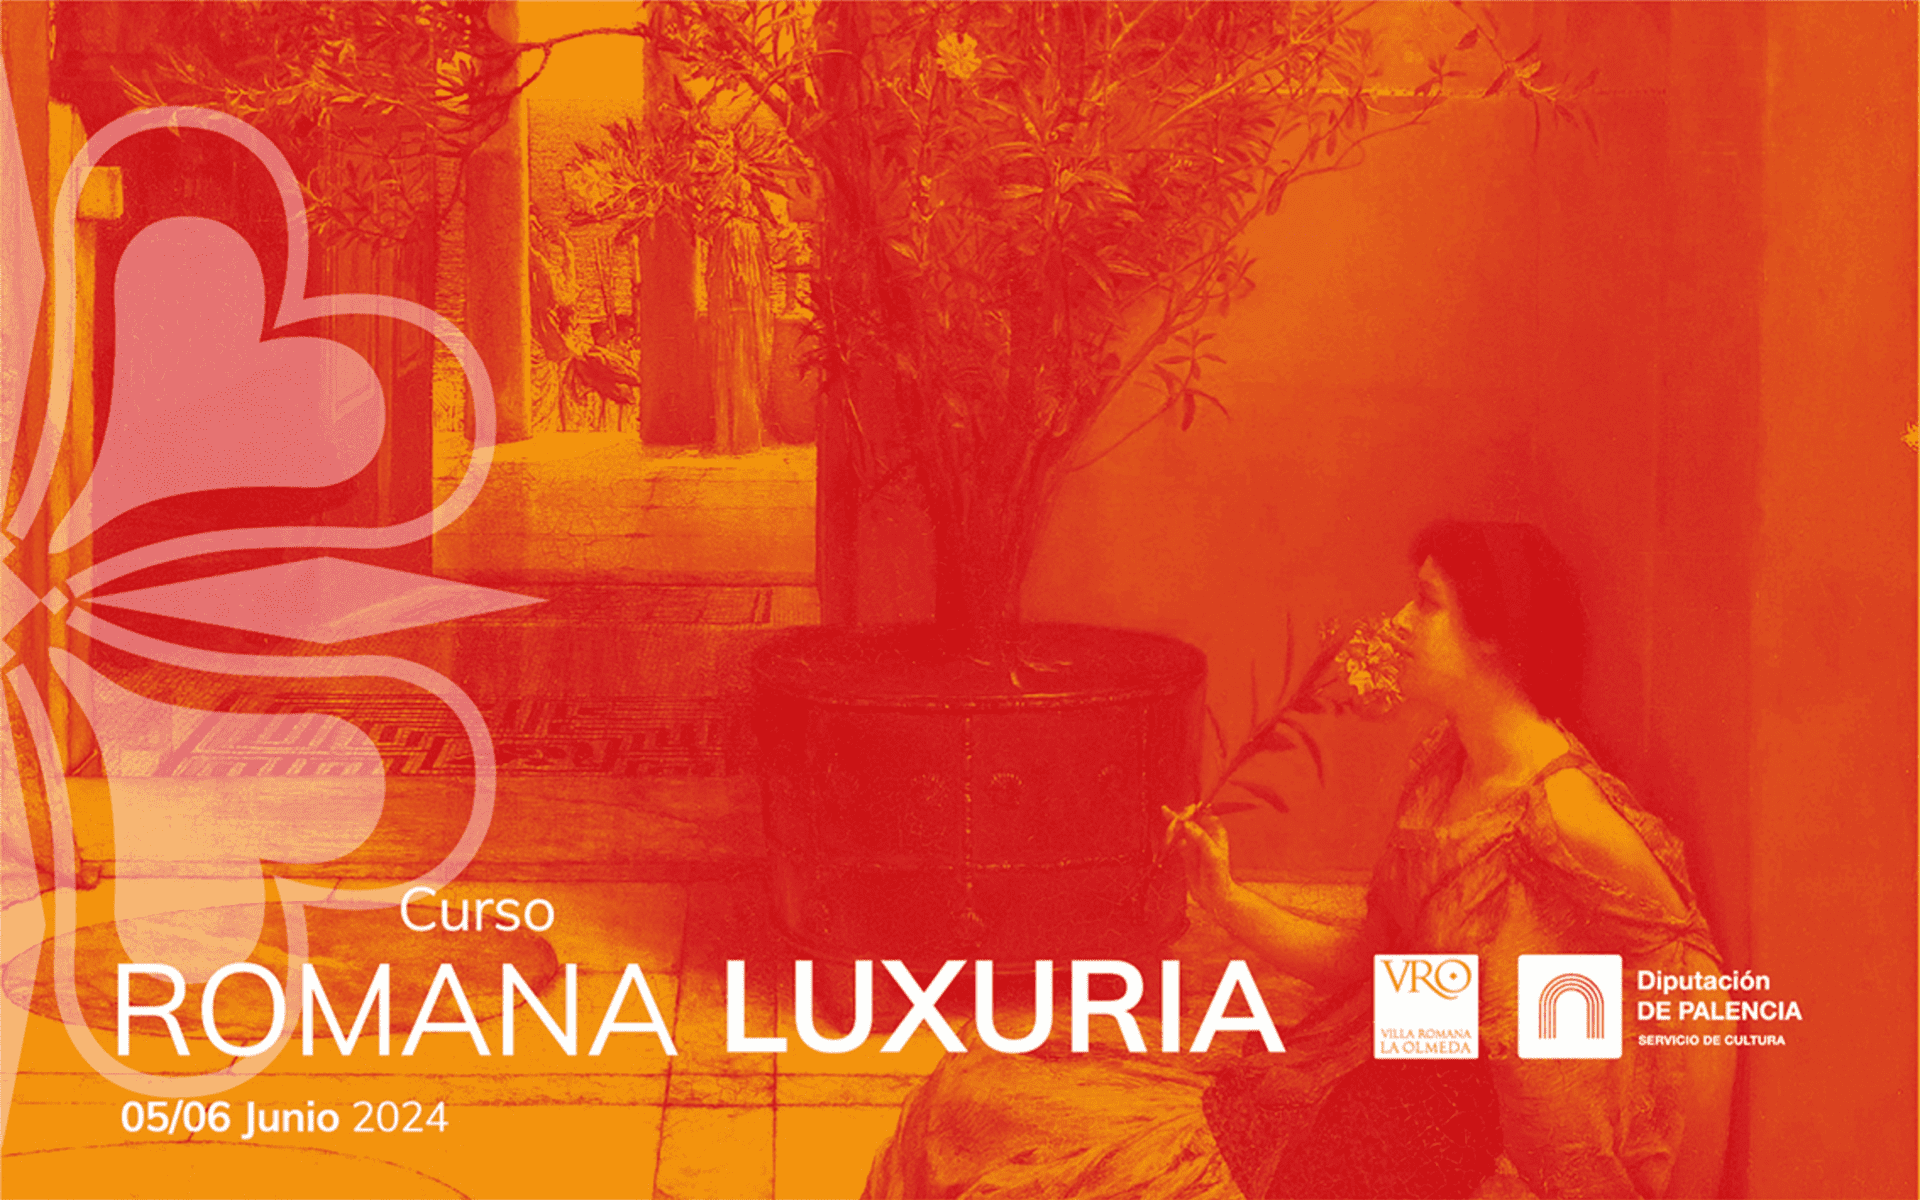 Abierto el plazo para inscribirse al curso Romana luxuria los días 5 y 6 de junio en La Olmeda